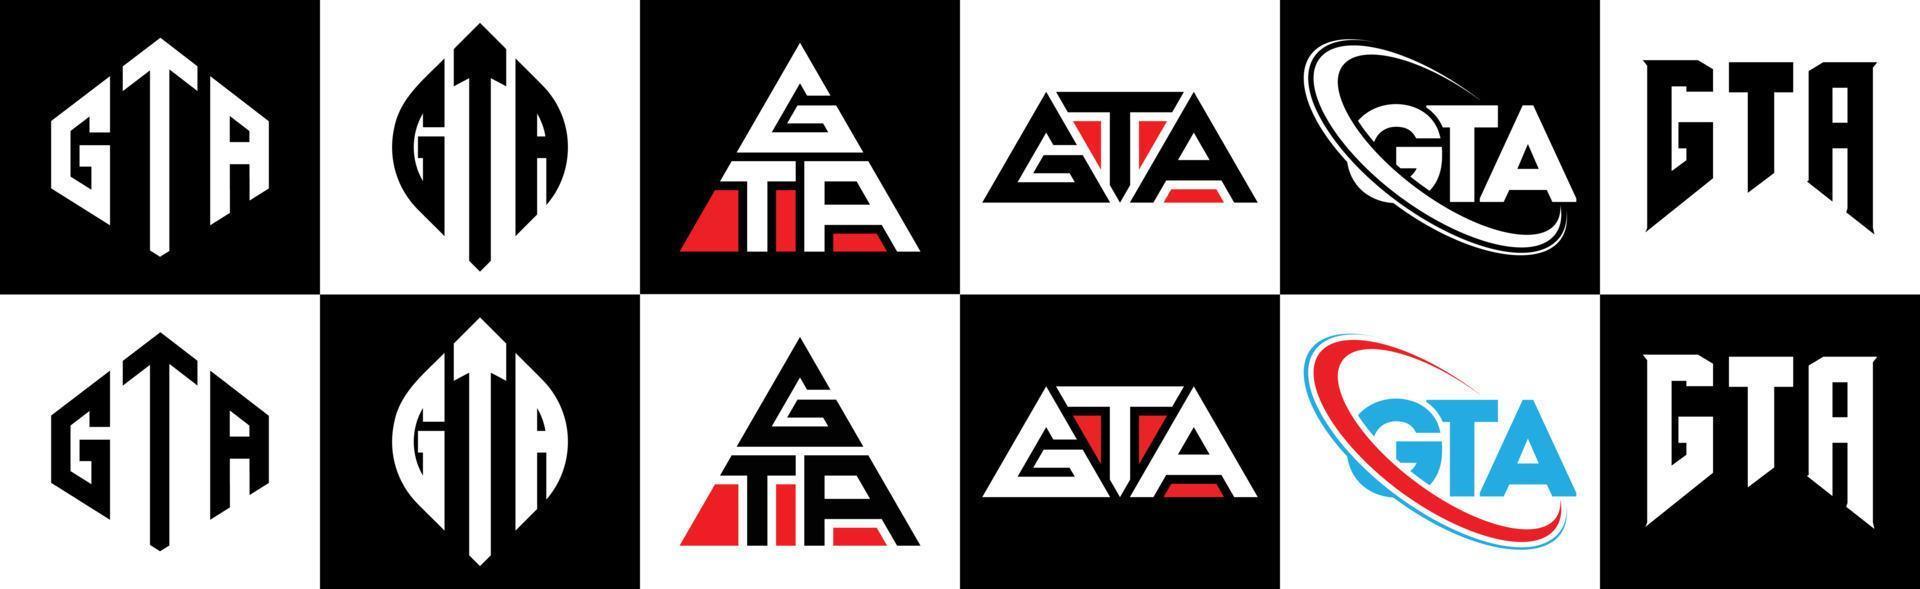 Diseño de logotipo de letra gta en seis estilos. gta polígono, círculo, triángulo, hexágono, estilo plano y simple con logotipo de letra de variación de color blanco y negro en una mesa de trabajo. logo gta minimalista y clasico vector